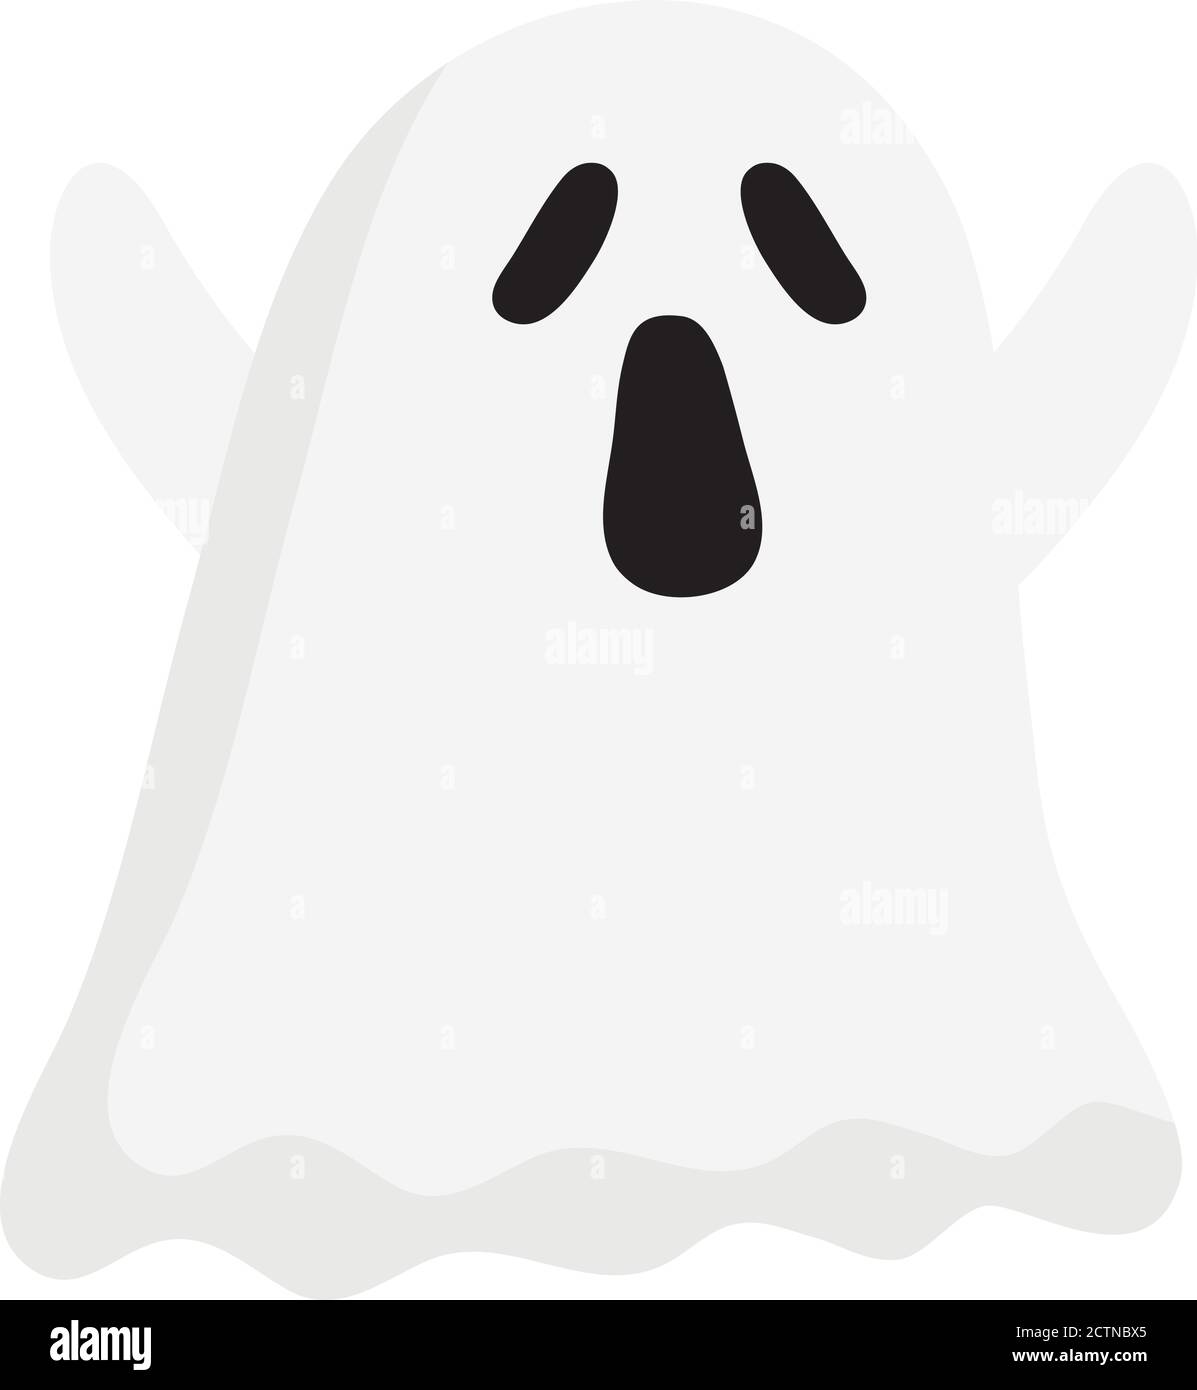 halloween ghost cartoon vector design Stock Vector Image & Art - Alamy